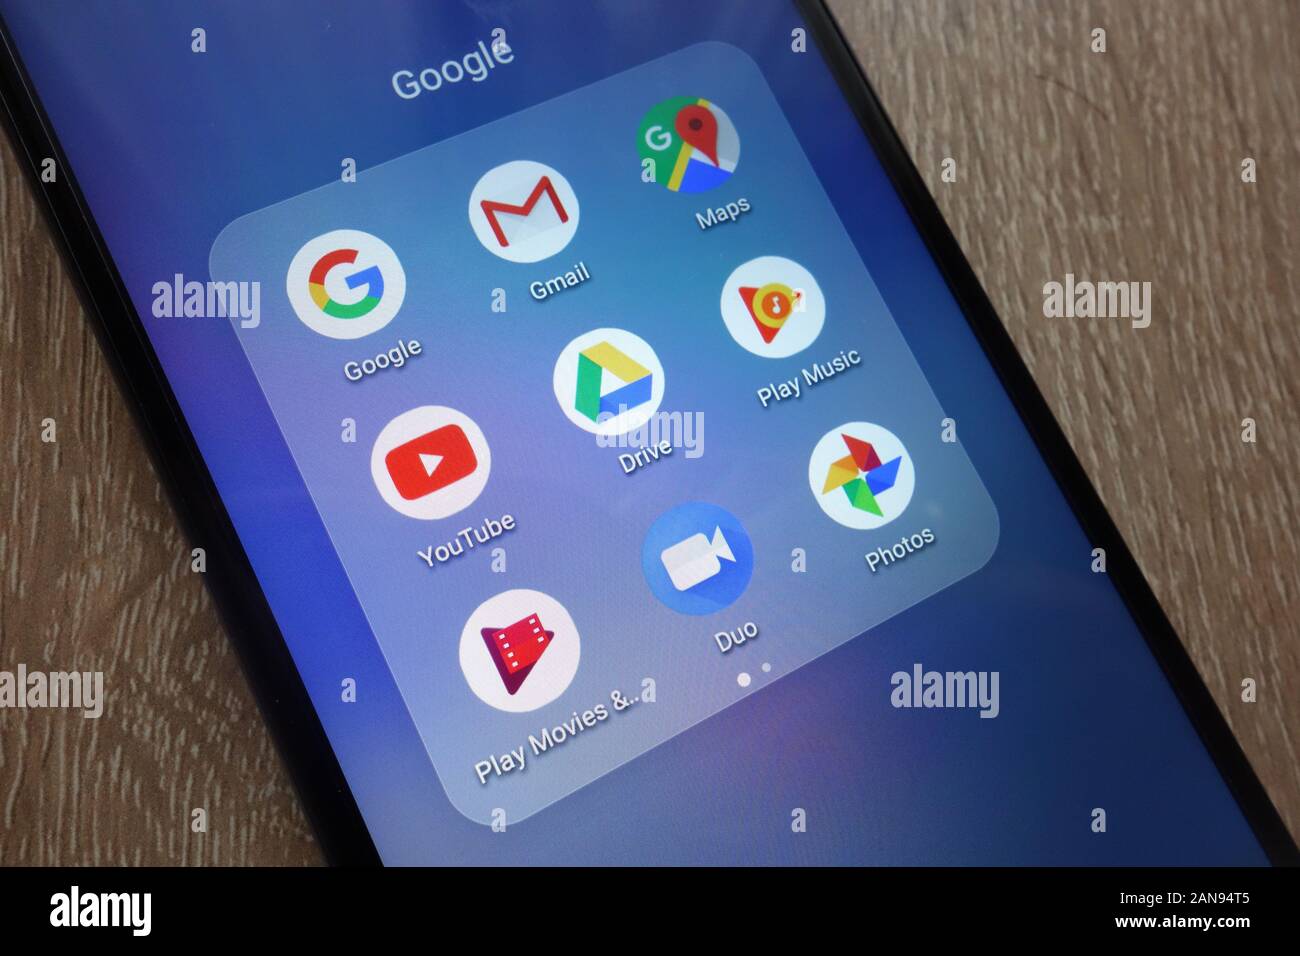 Google-Apps wie Gmail, Maps, Youtube, Duo, Play Music auf einem neuen modernen Smartphone Stockfoto